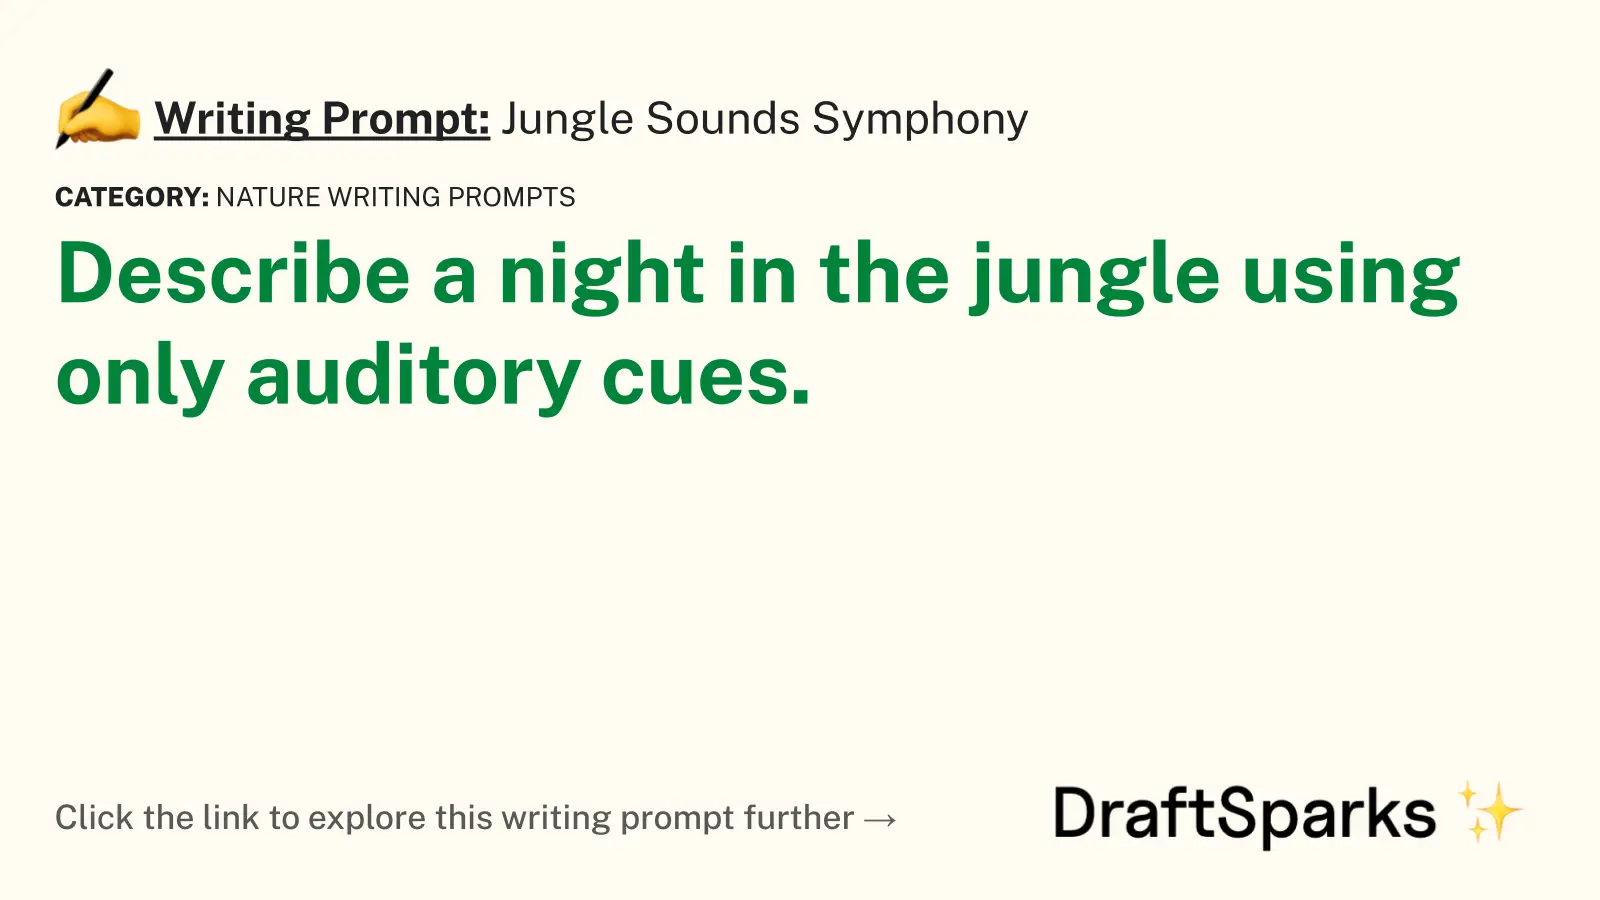 Jungle Sounds Symphony